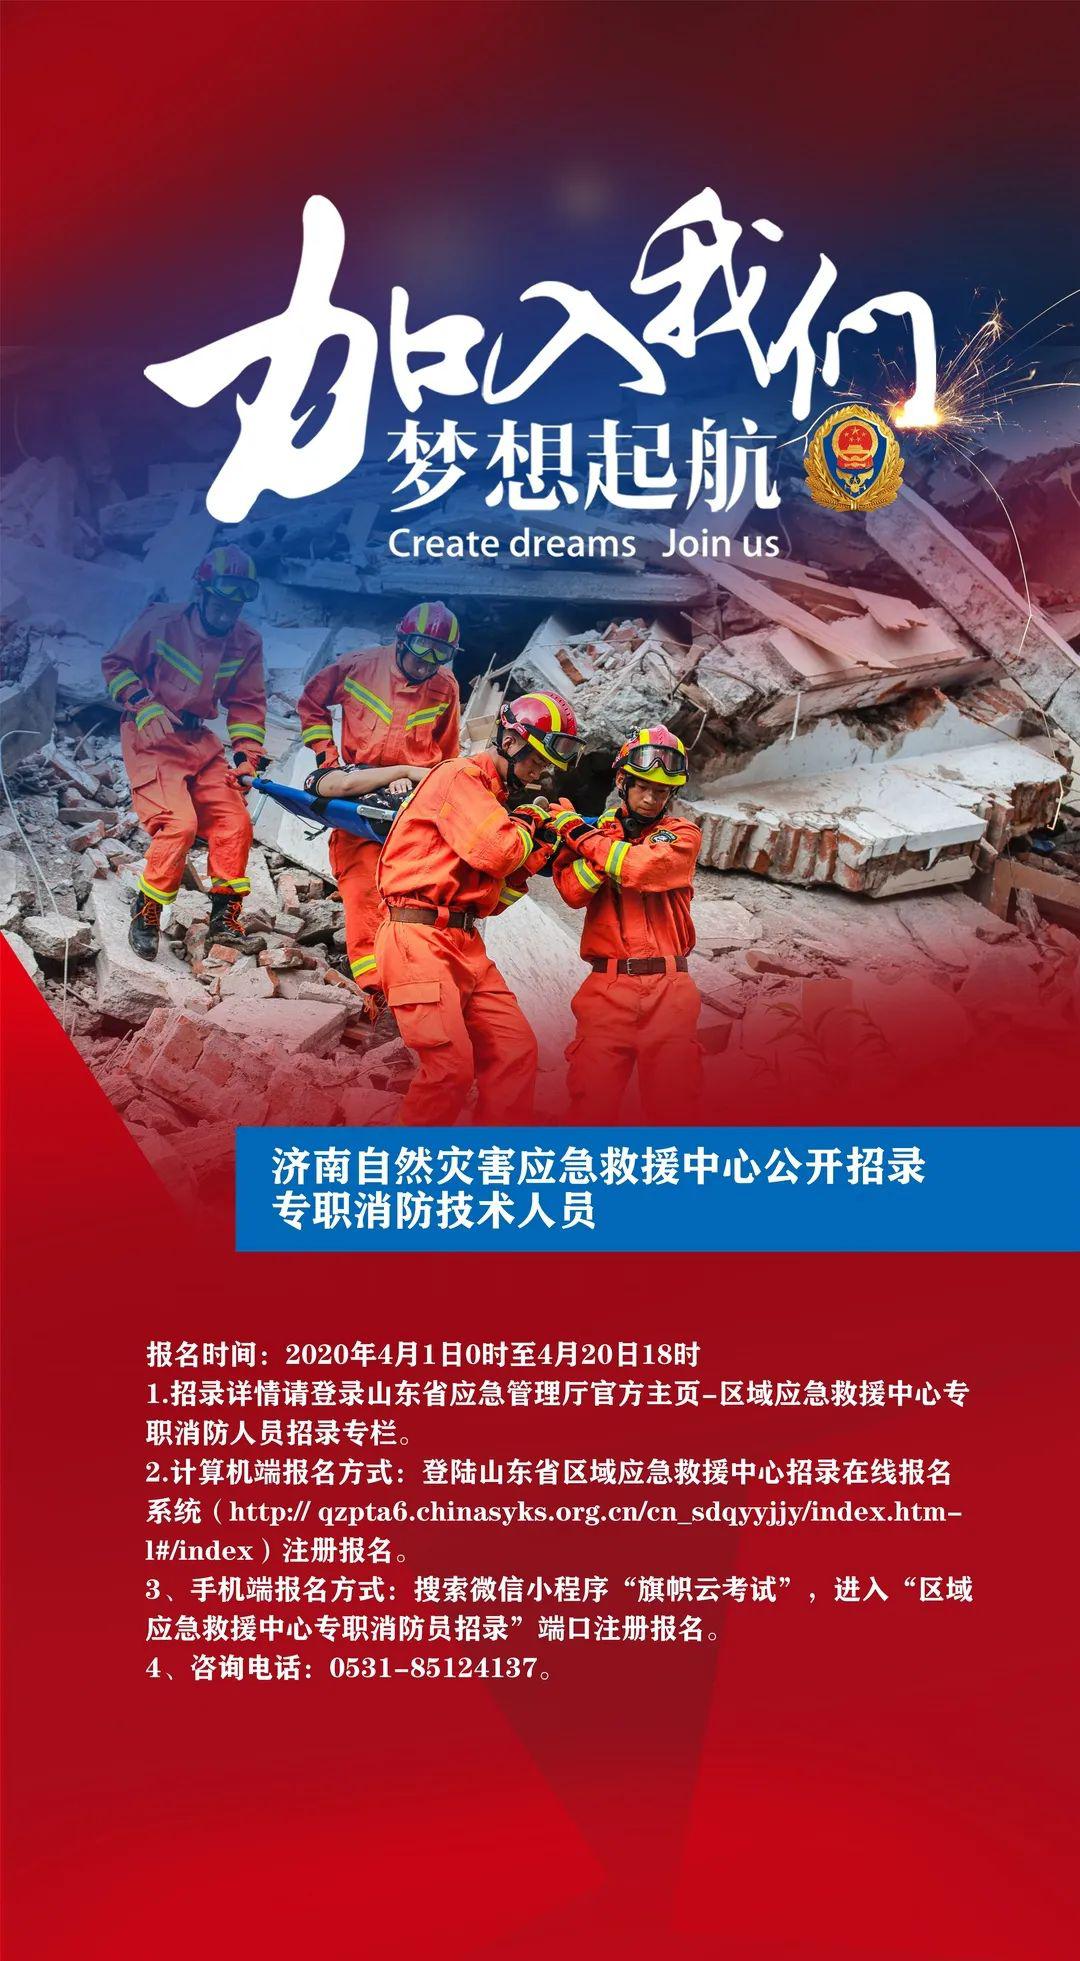 山东省区域性应急救援中心招录专职消防救援人员,专职消防技术人员